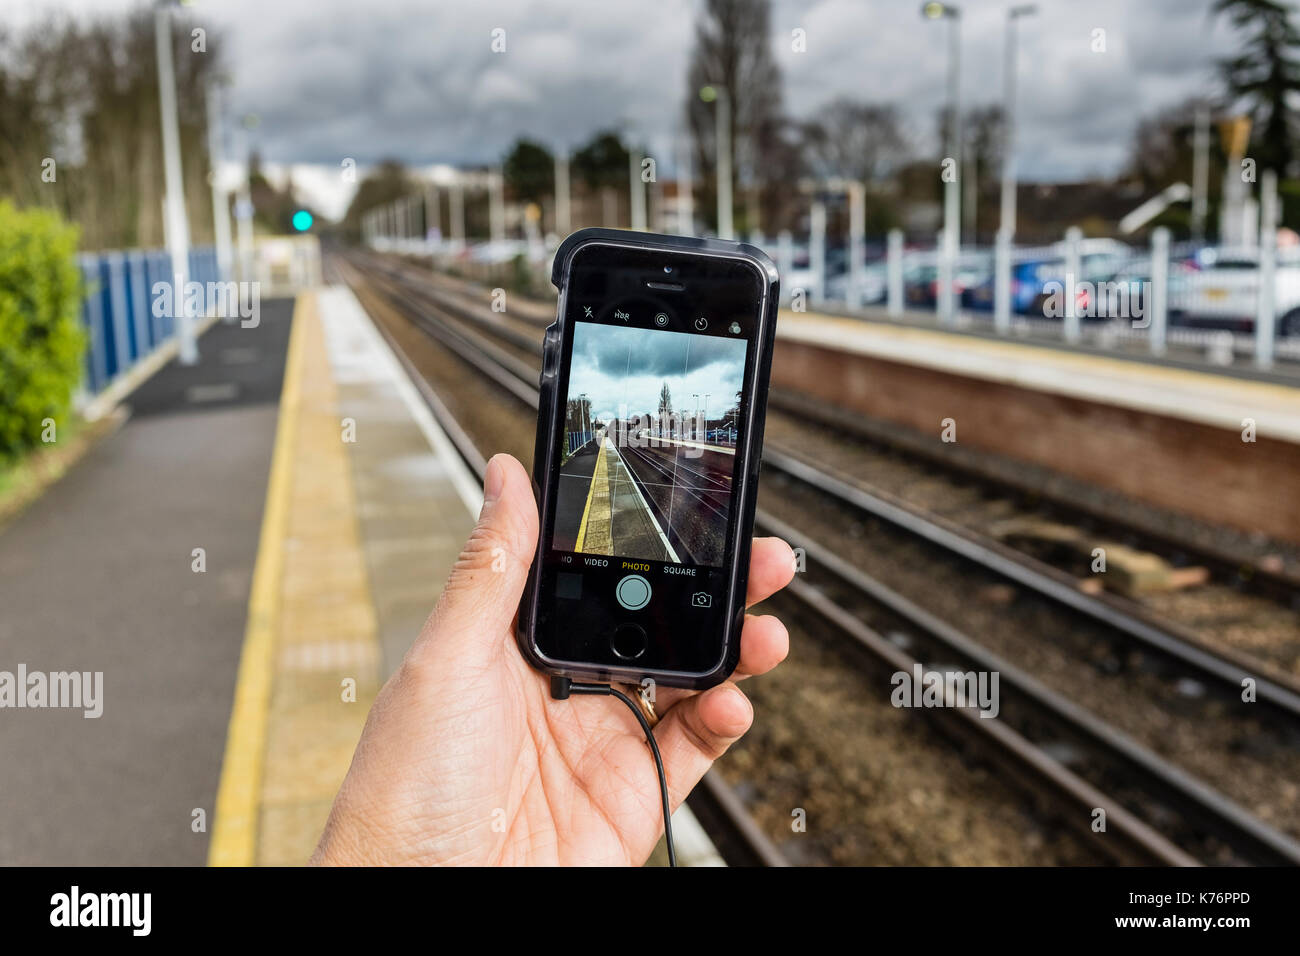 Ein männlicher Fotos machen und die Bahn mit einem iPhone SE Smartphone, Großbritannien Stockfoto